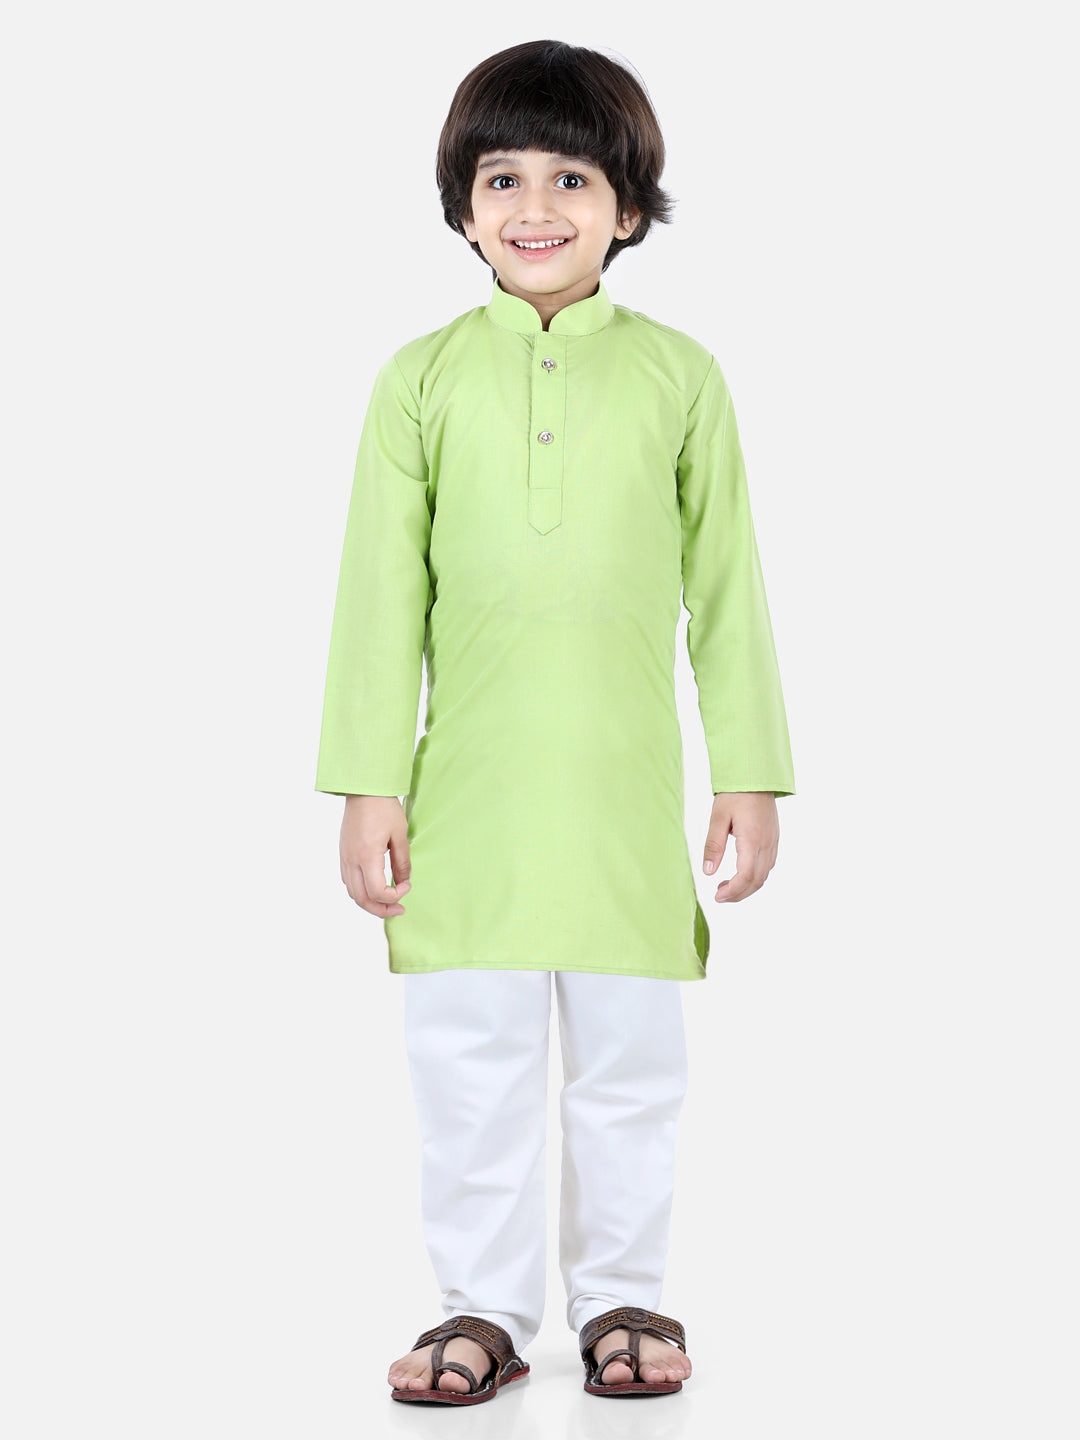 BownBee Sibling set of Patan Patola Jacket Kurta Pajama and Patch Top and Dhoti-Green